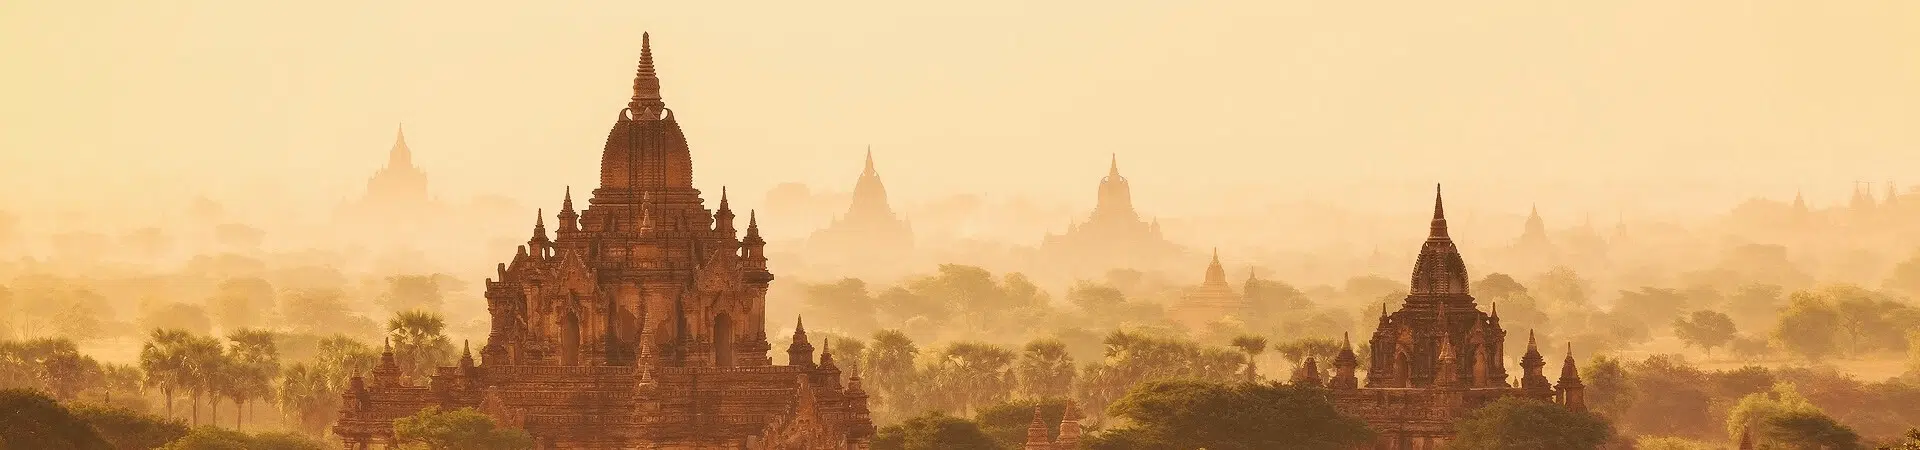 Objavte Bagan